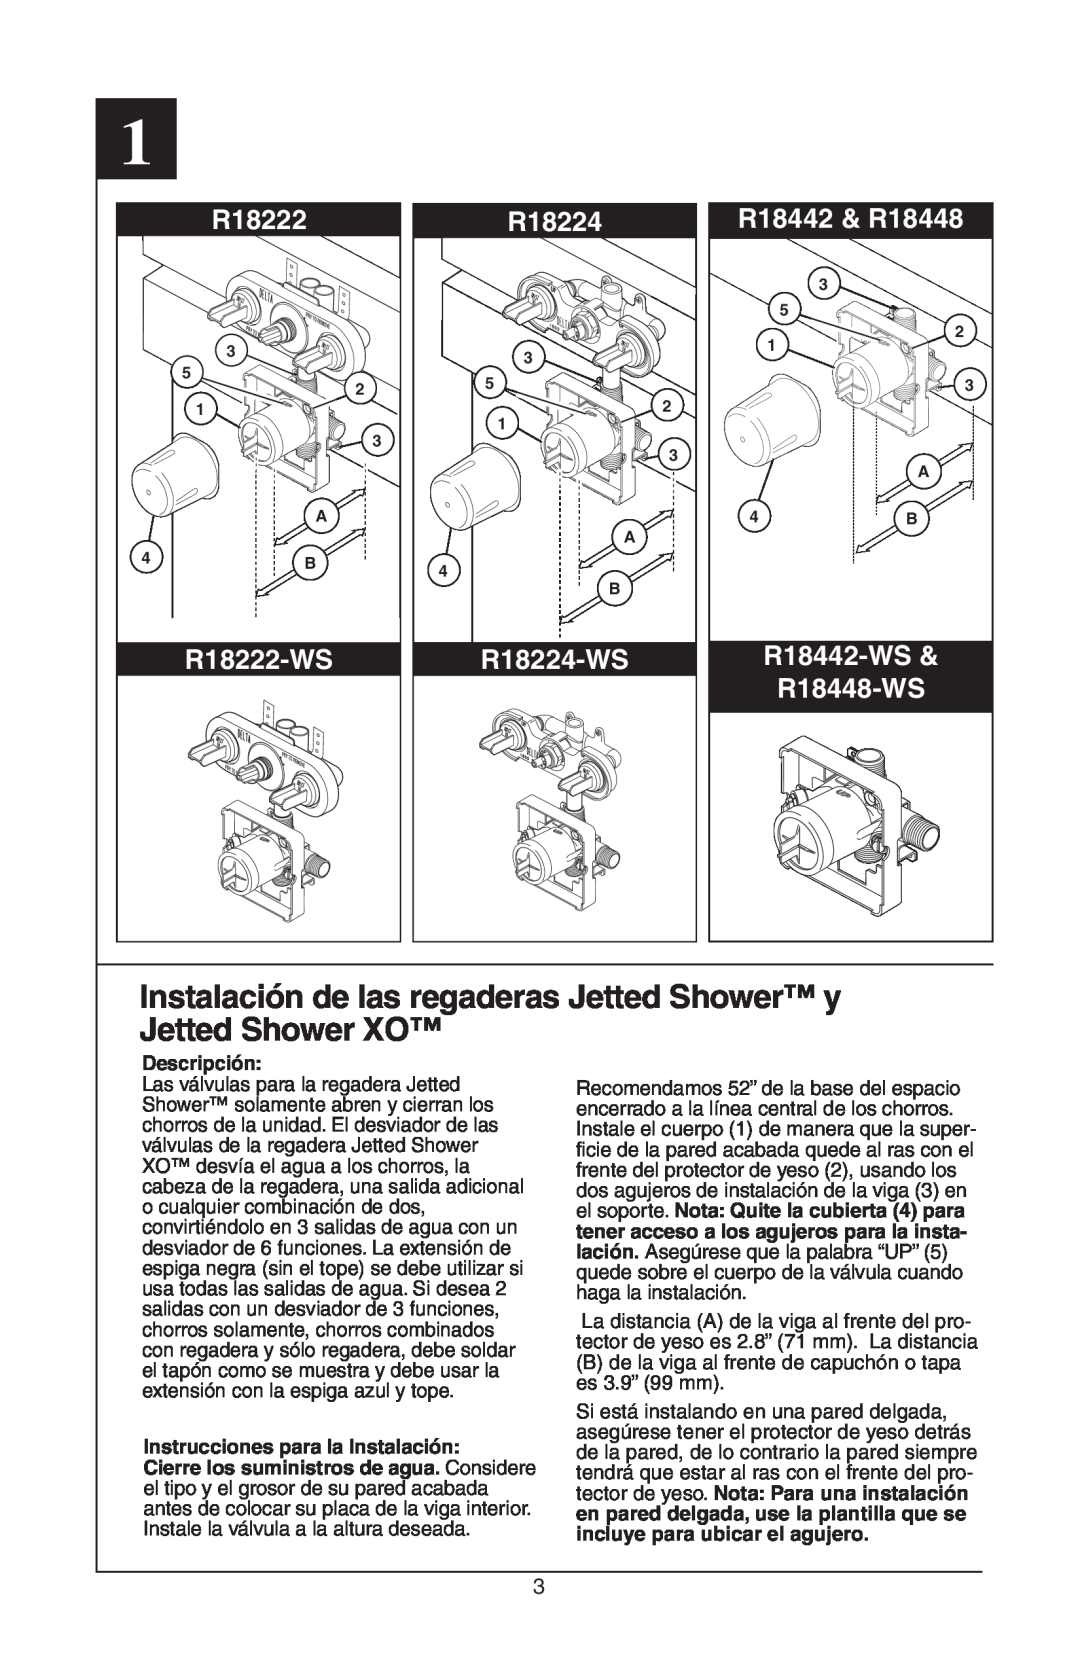 Delta Instalación de las regaderas Jetted Shower y Jetted Shower XO, R18222-WS, R18224-WS, R18442 & R18448 